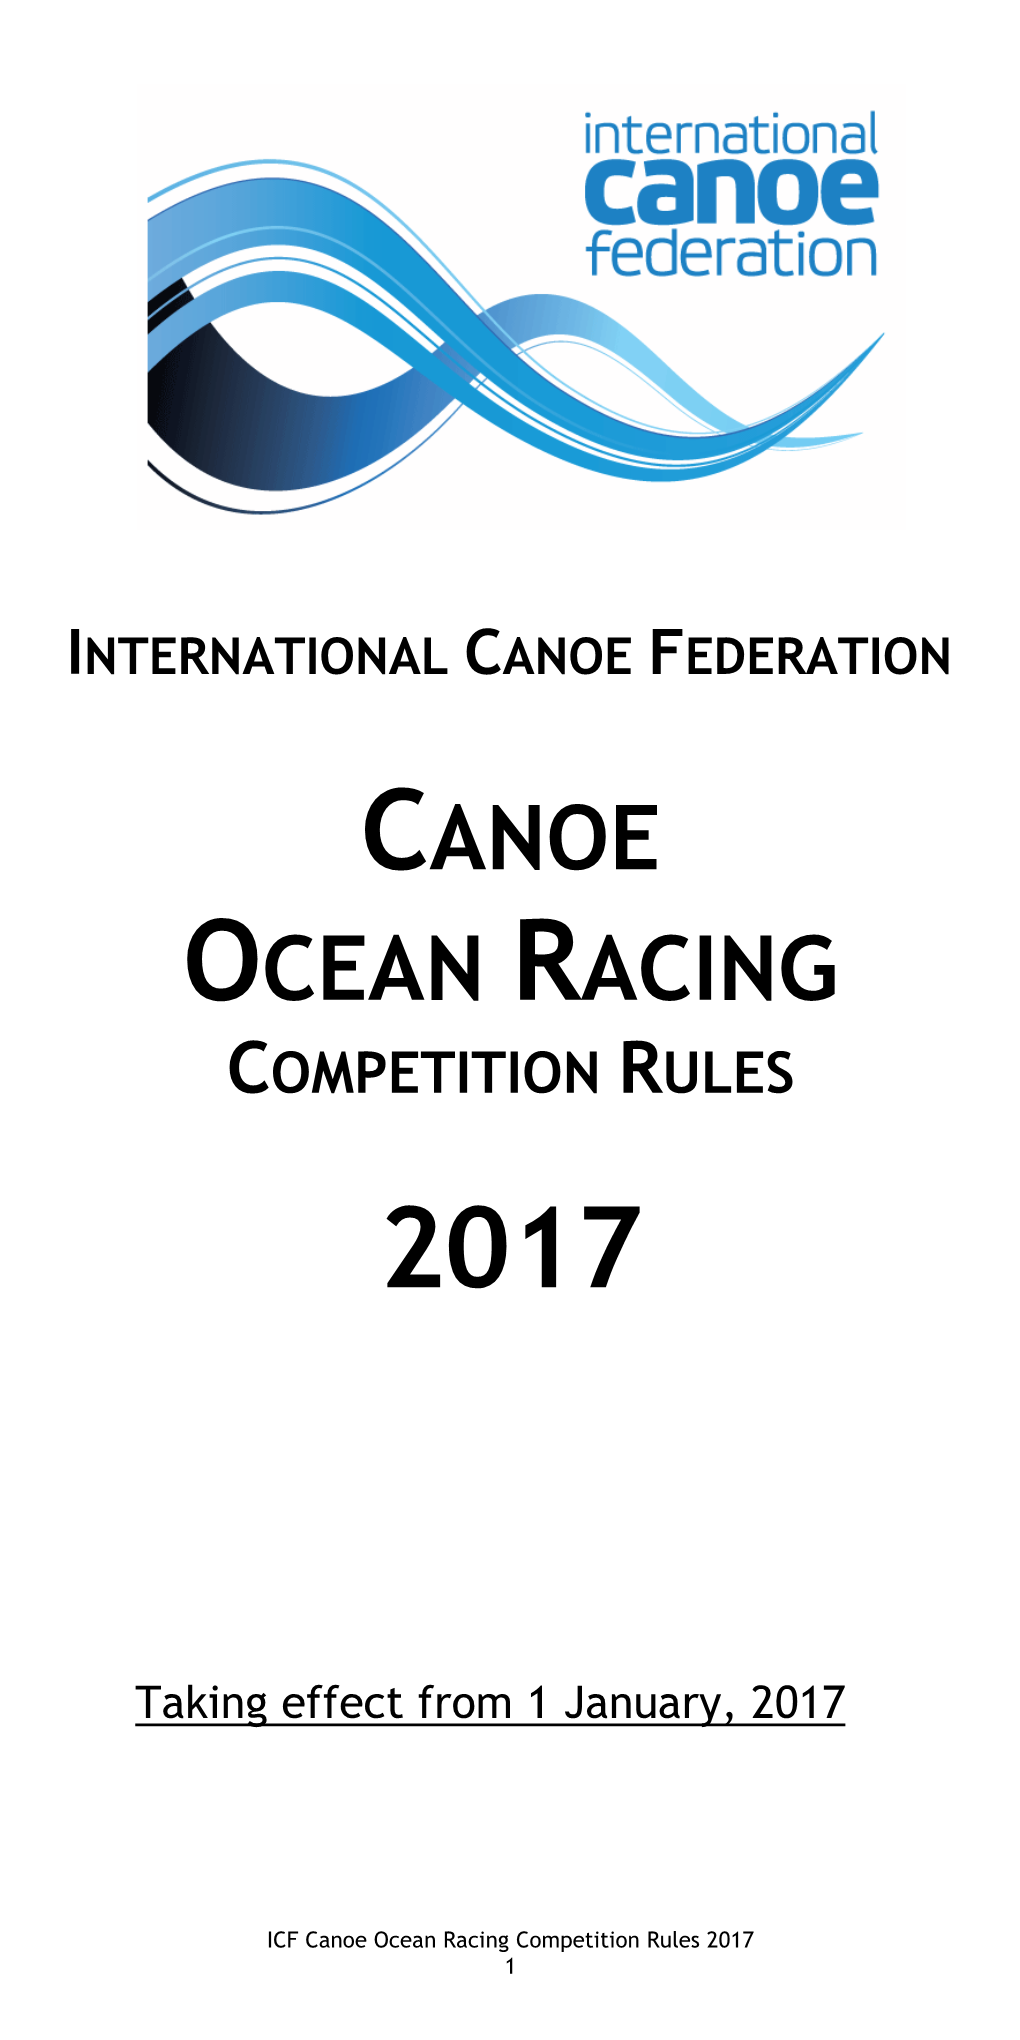 ICF Canoe Ocean Racing Rules 2017